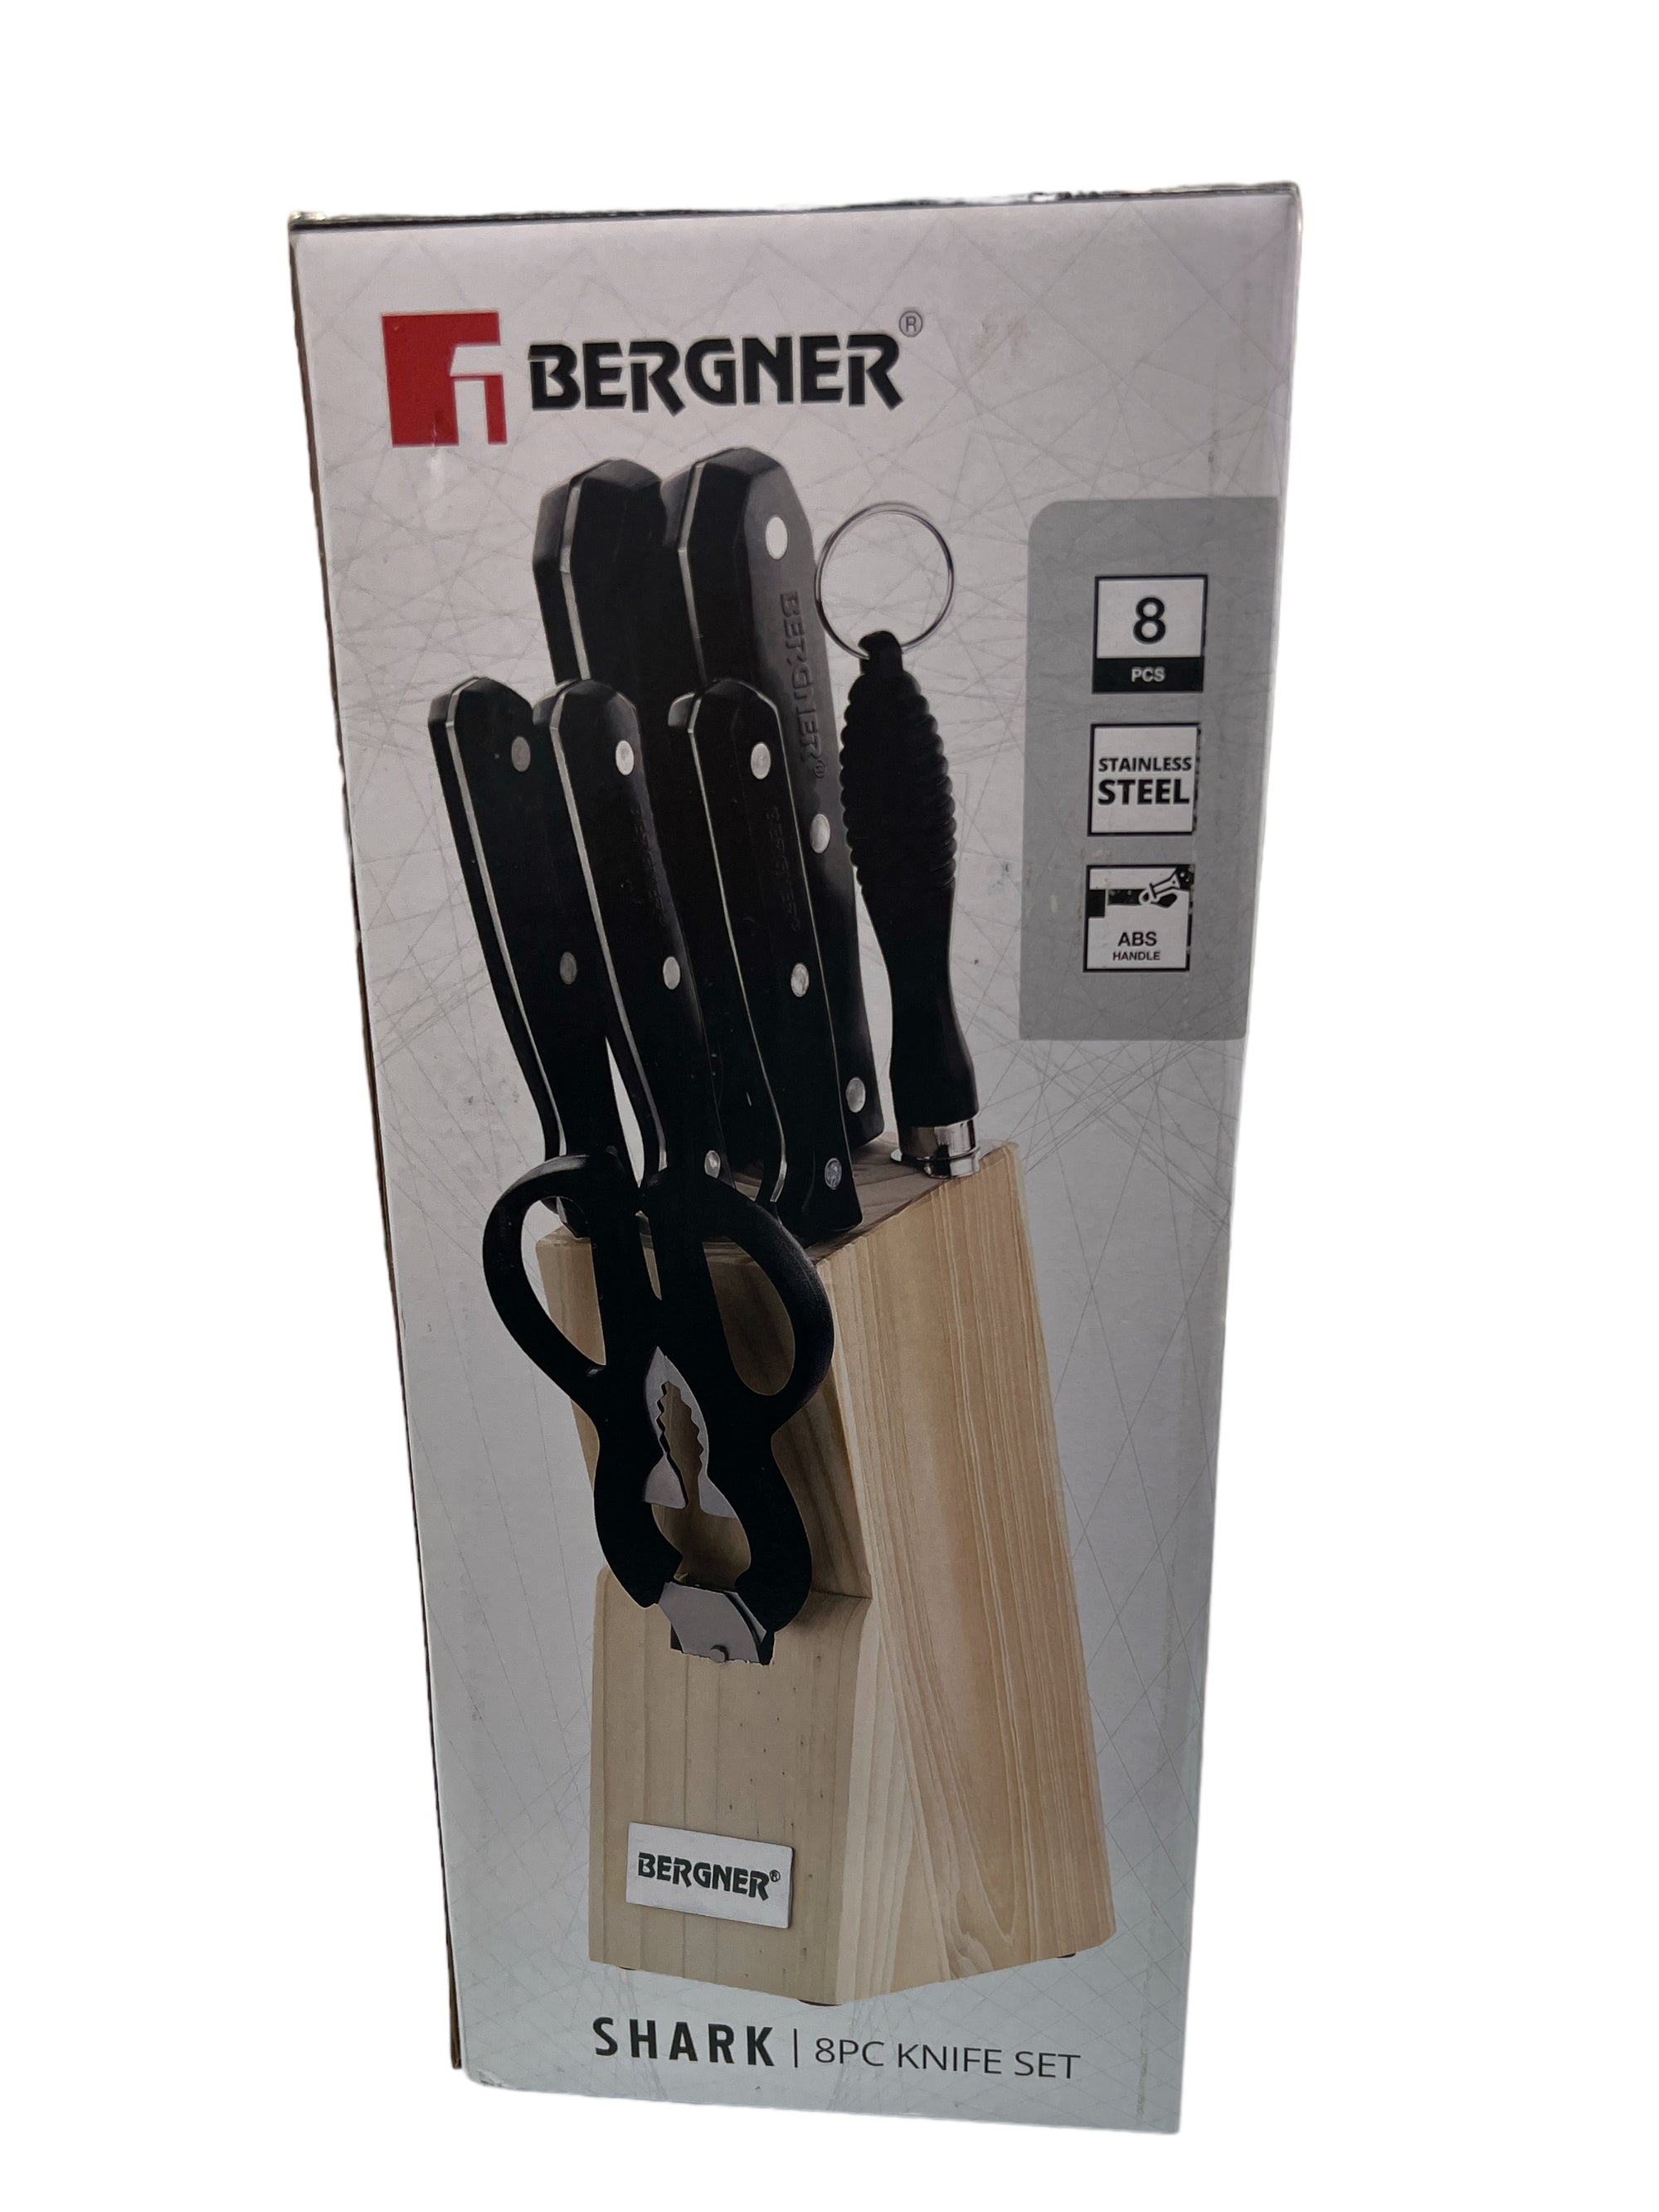 Bergner Shark 8pc knife set